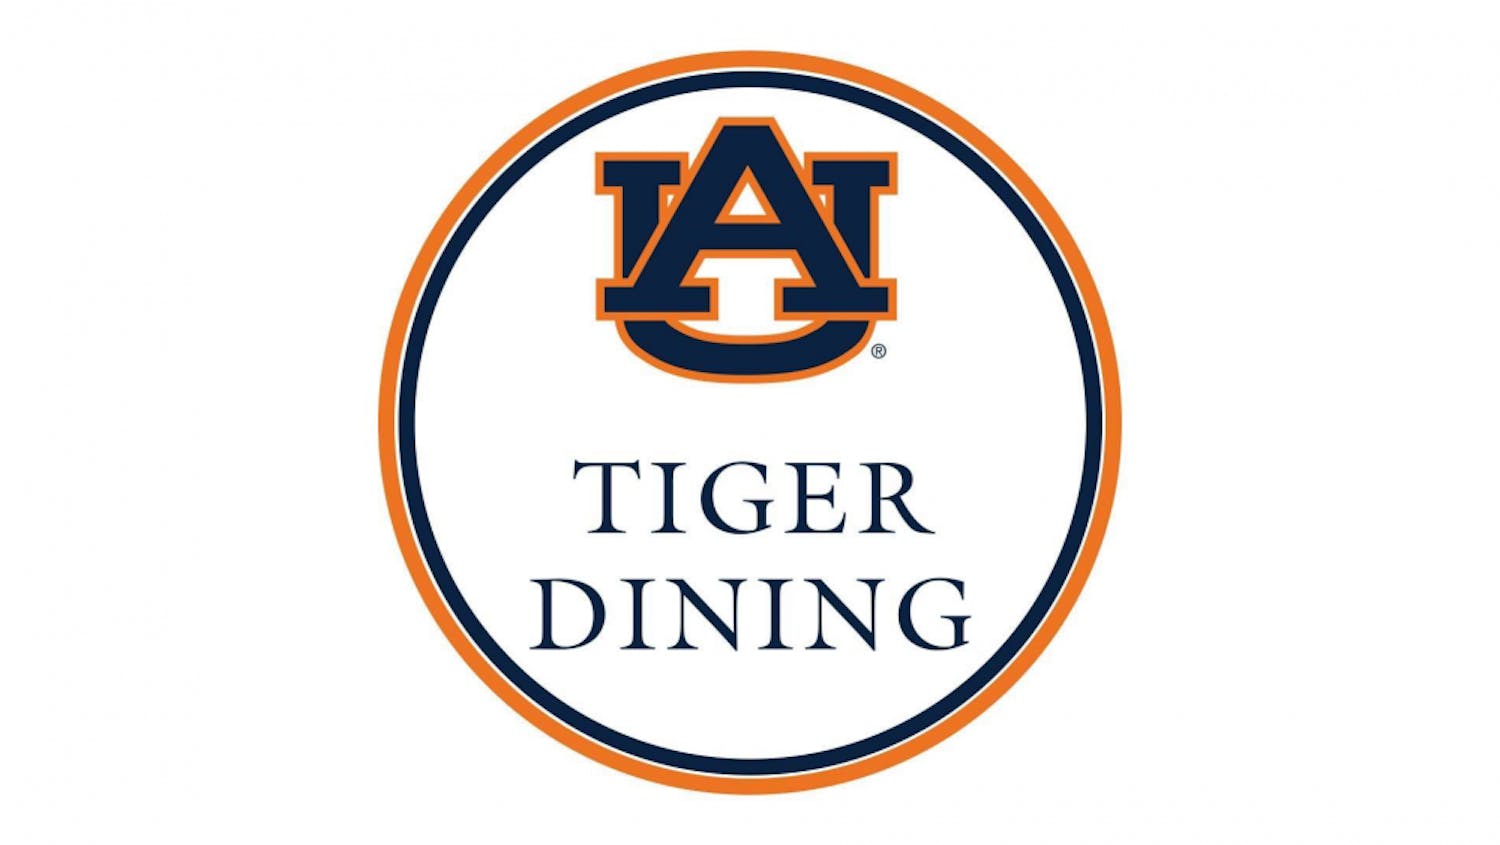 Tiger Dining logo